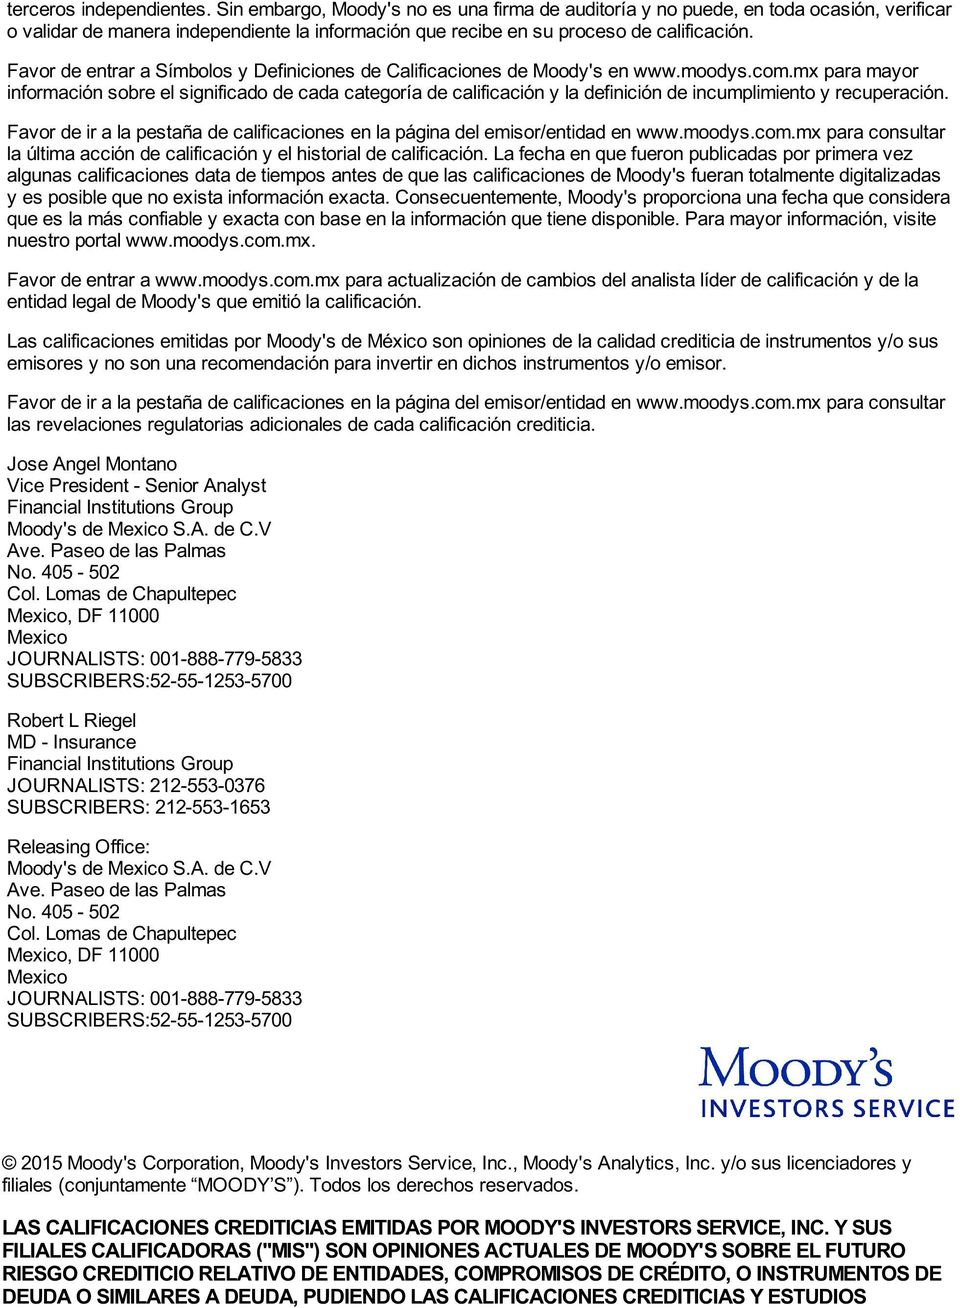 Favor de entrar a Símbolos y Definiciones de Calificaciones de Moody's en www.moodys.com.